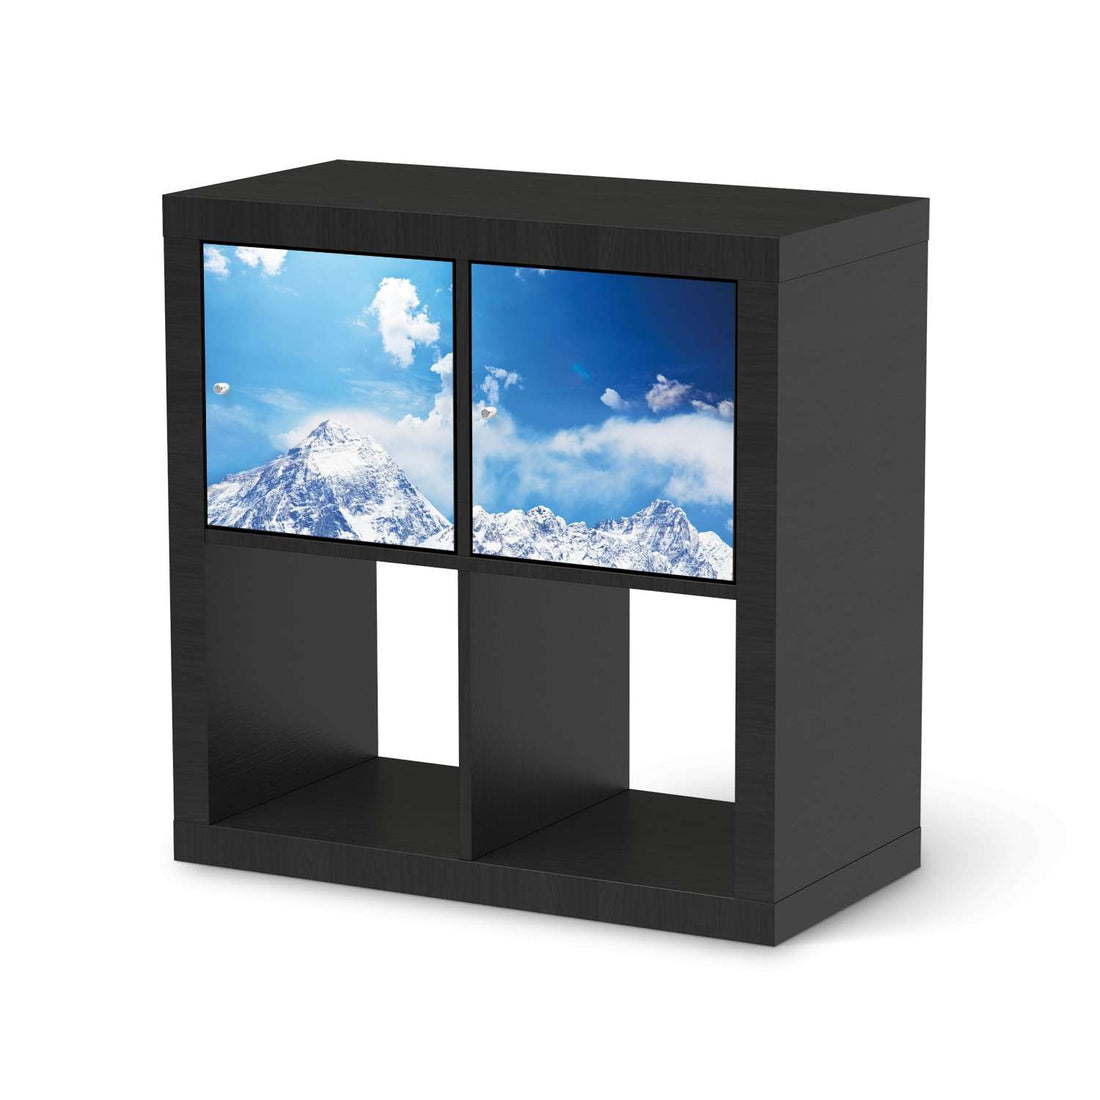 Möbel Klebefolie Everest - IKEA Expedit Regal 2 Türen Quer - schwarz